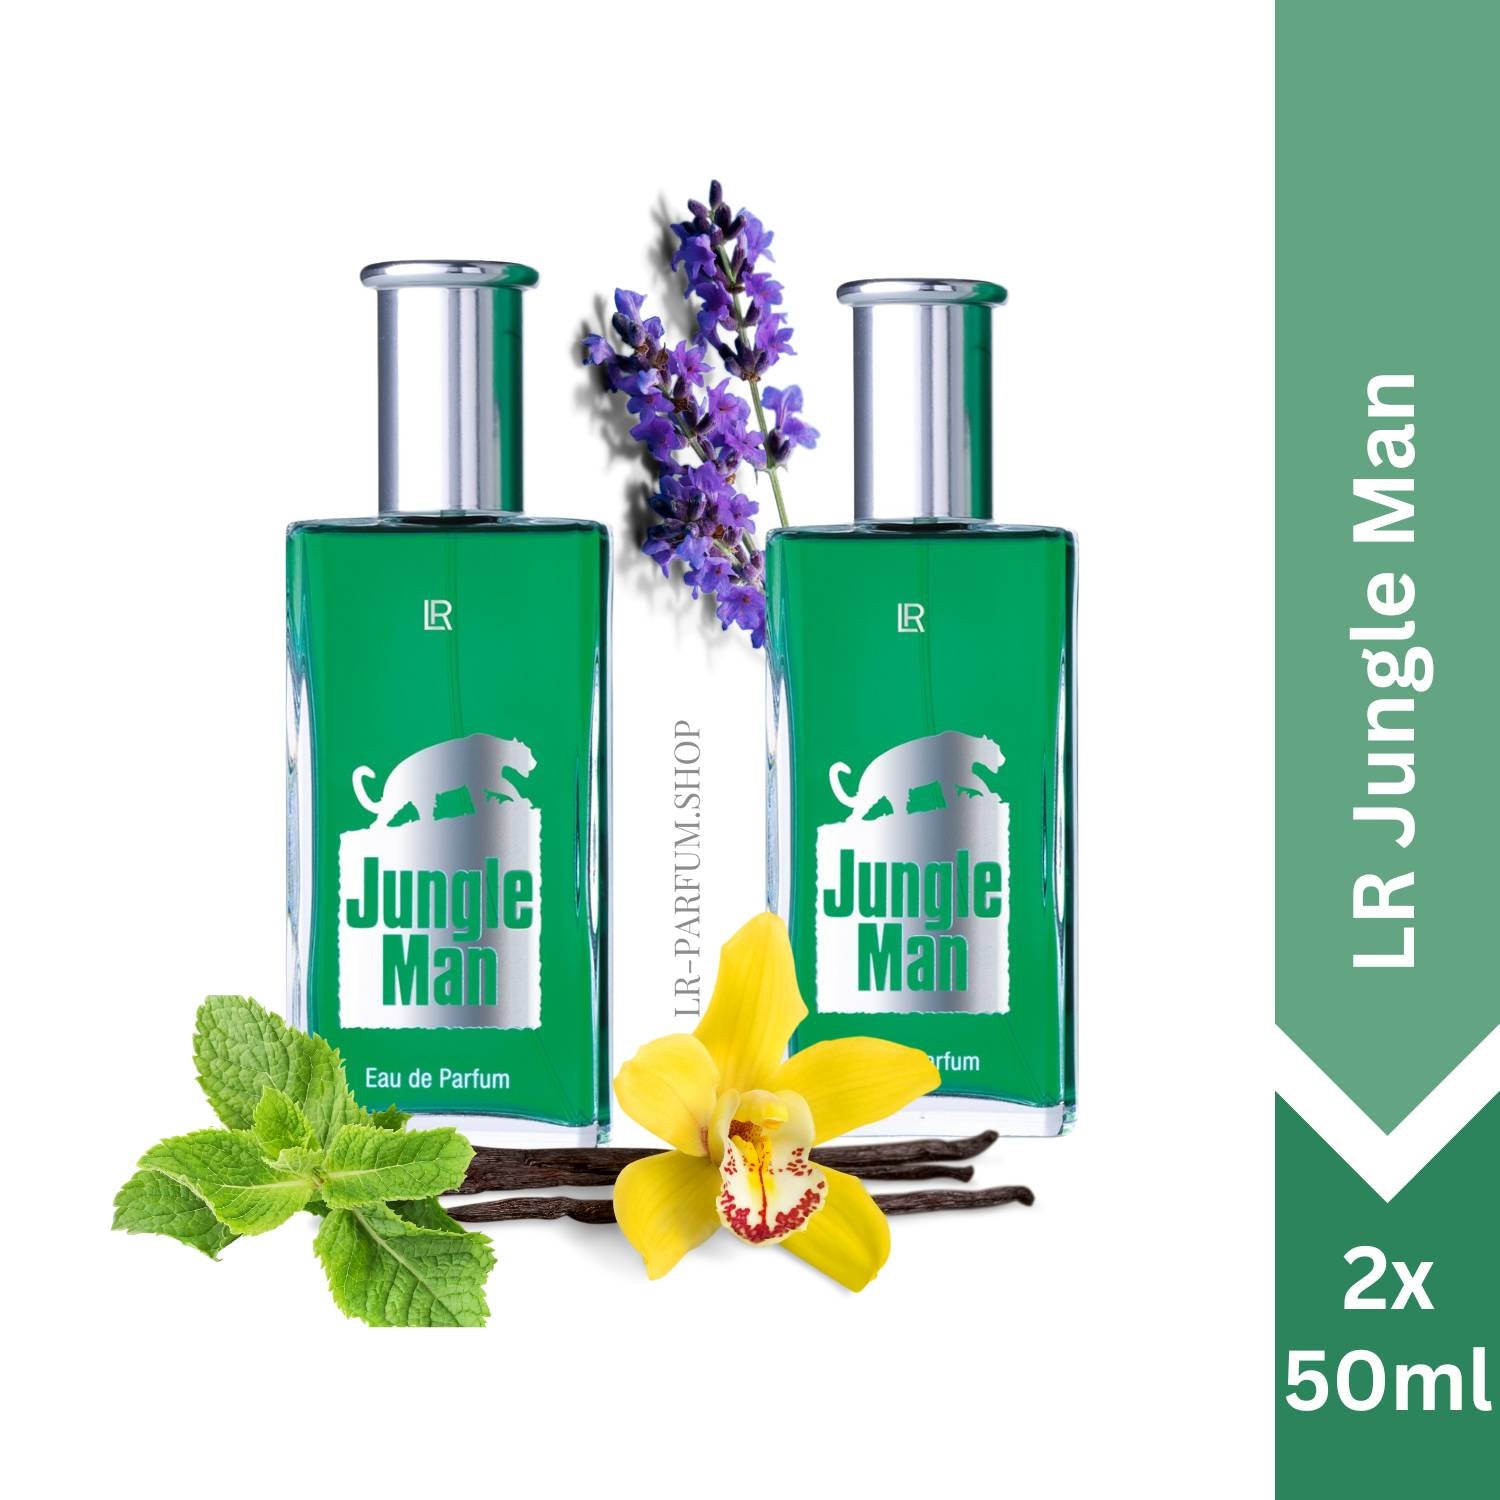 LR Jungle Man - Eau de Parfum, 2er Pack (2x50ml) - LR-Parfum.shop